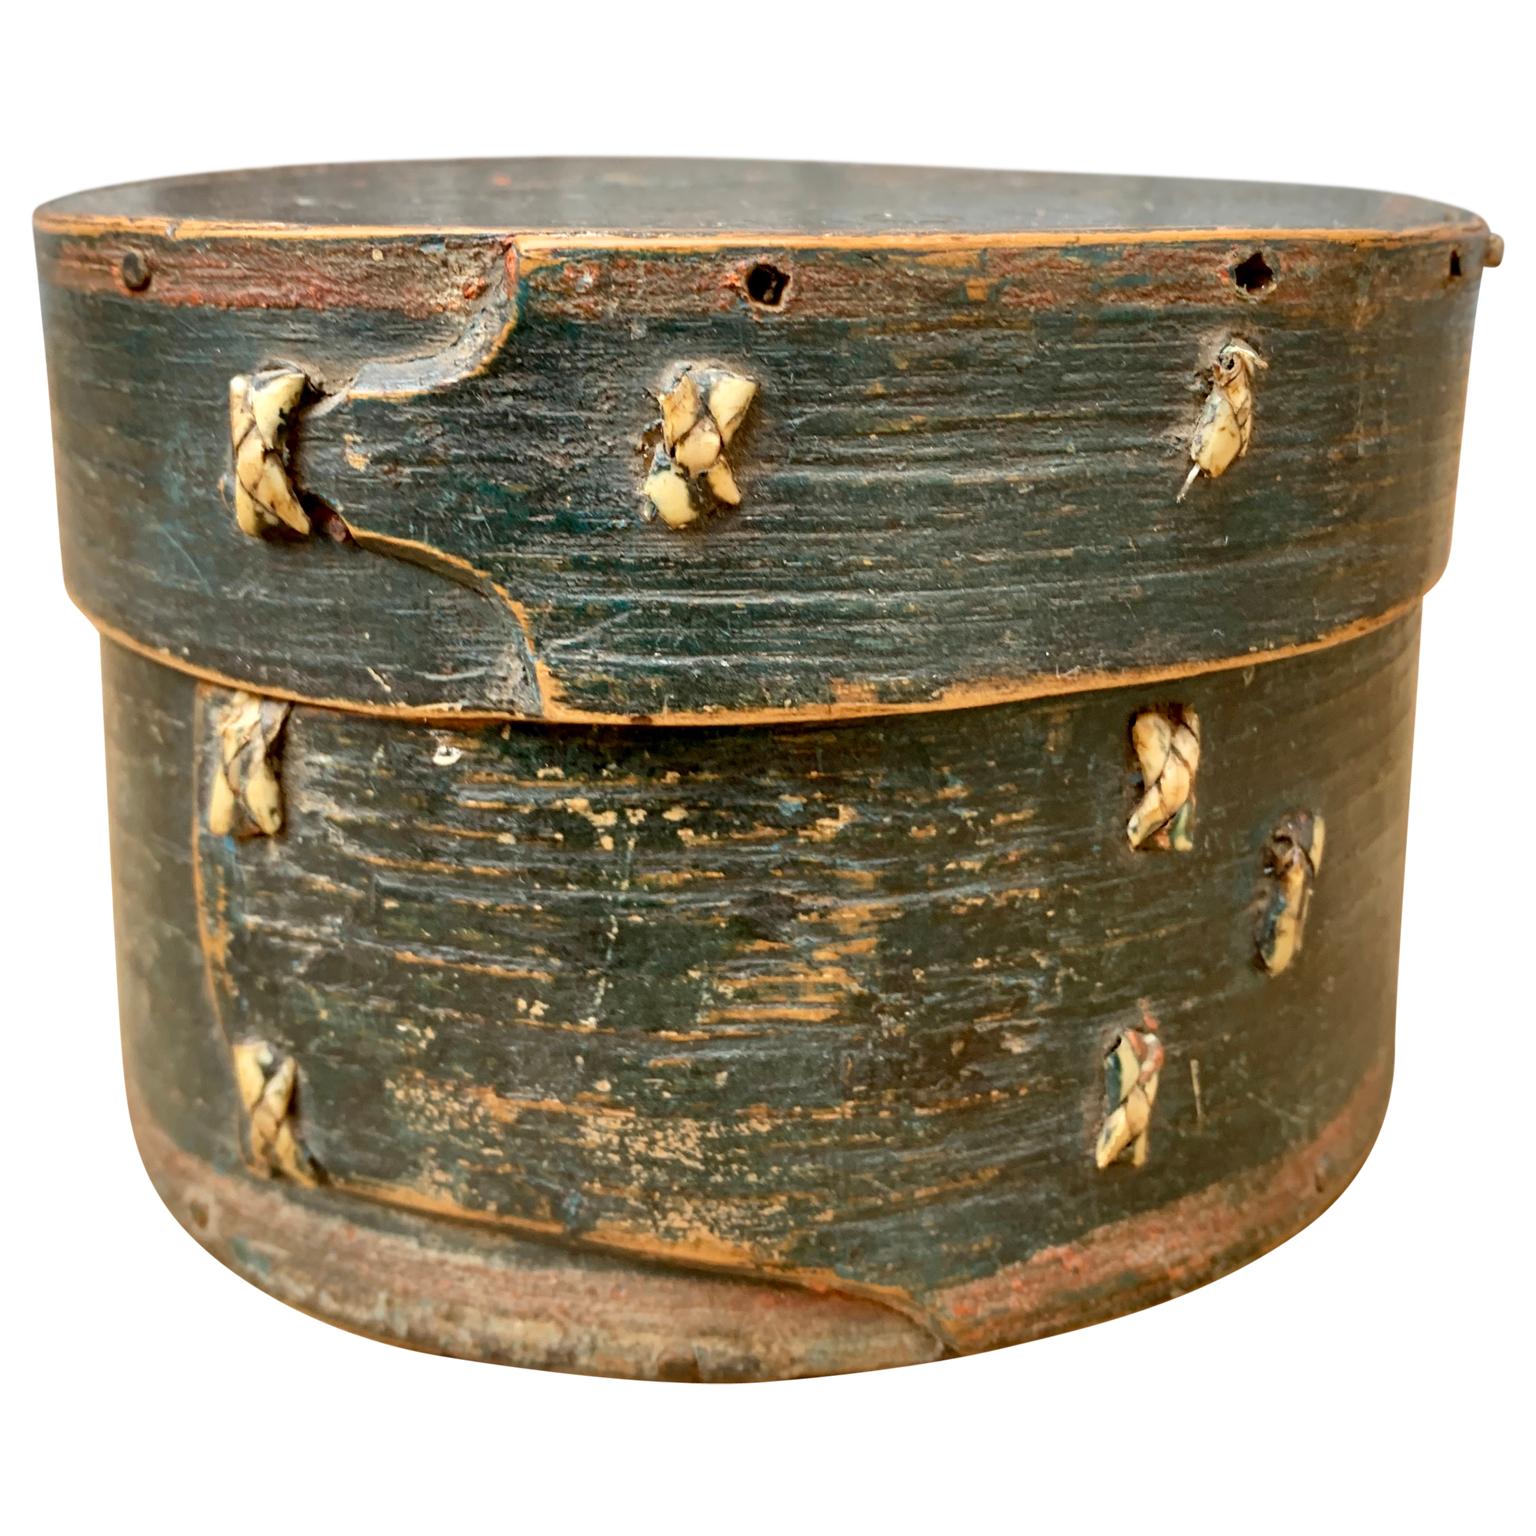 Eine kleine schwedische Volkskunstdose aus dem 18. Jahrhundert mit Originalfarbe.
Das Kästchen wird wahrscheinlich zur Aufbewahrung von Schmuck und anderen wertvollen Gegenständen verwendet. Die Schachtel ist mit der Inschrift ANNO 1792 DEN 27